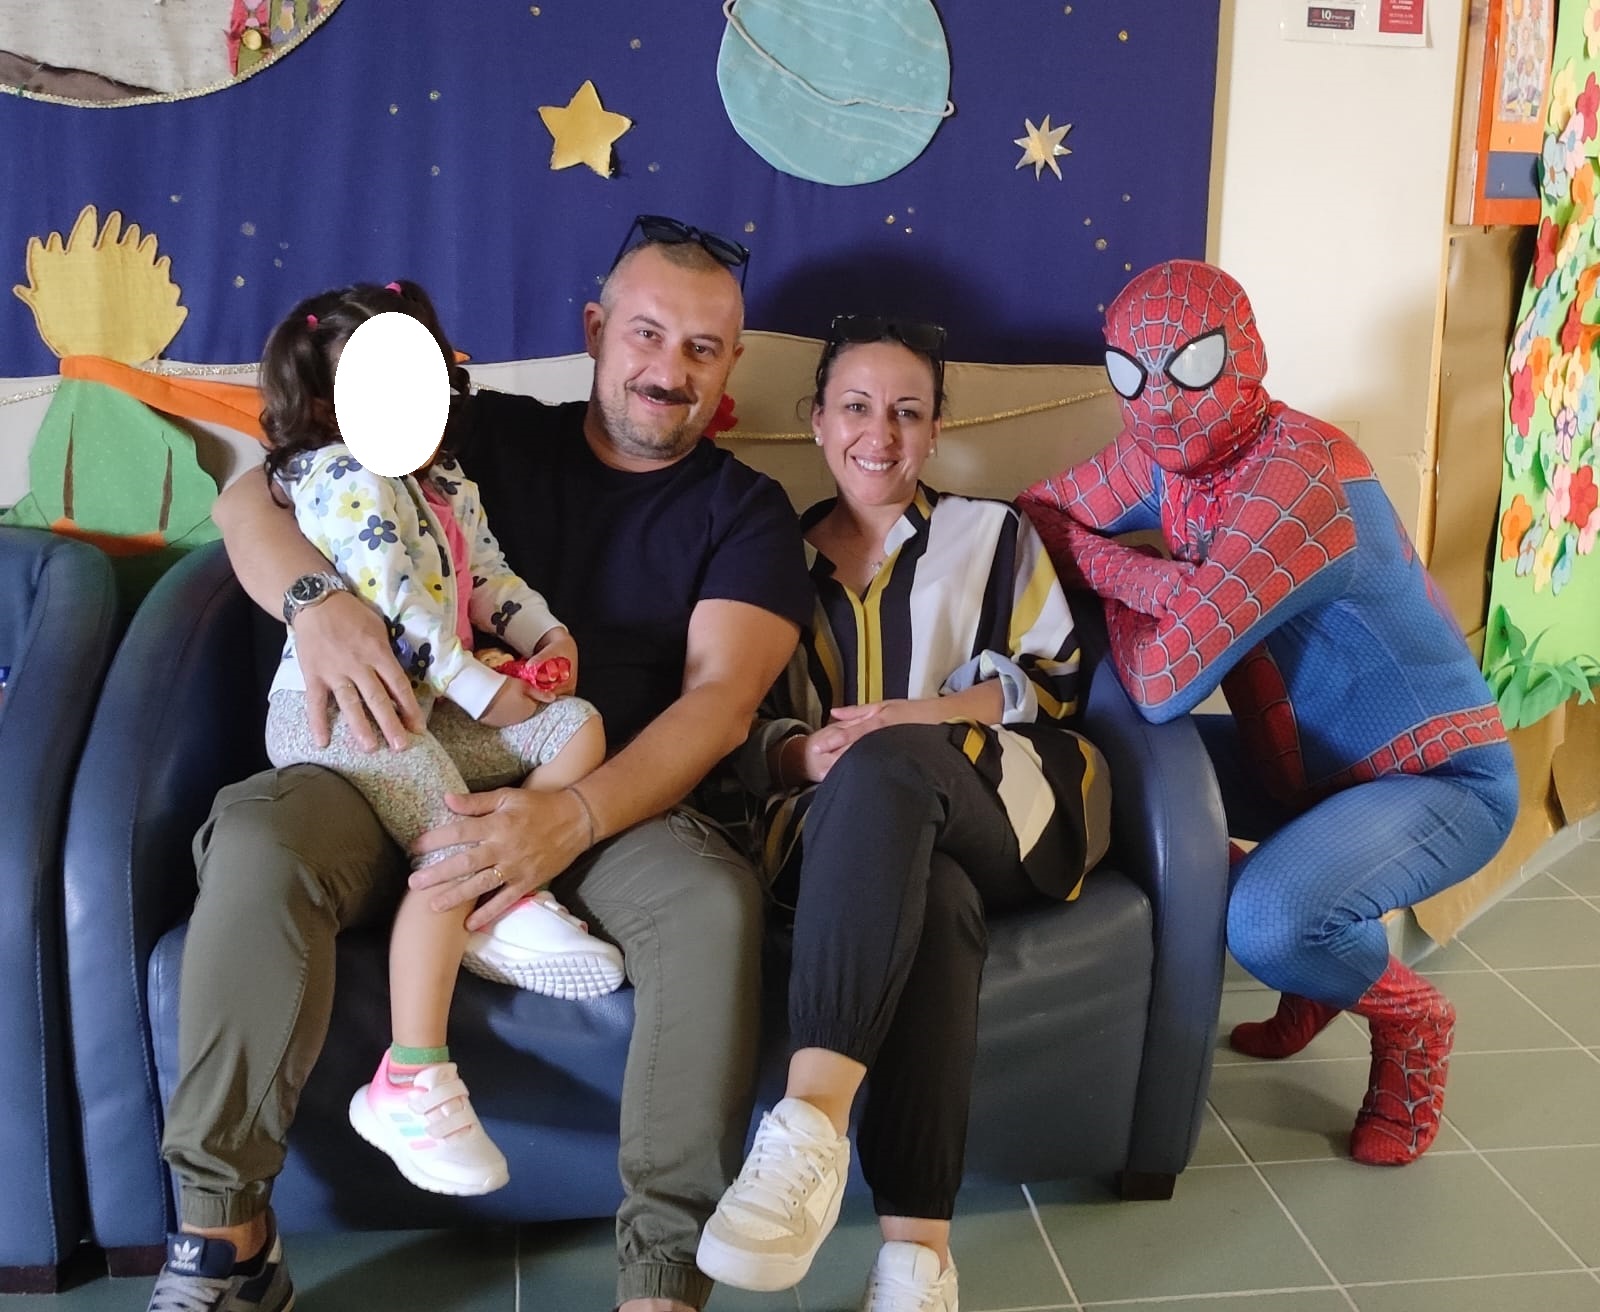 Incontro tra supereroi: Spiderman dona giocattoli all’Ospedale Madonna delle Grazie di Matera